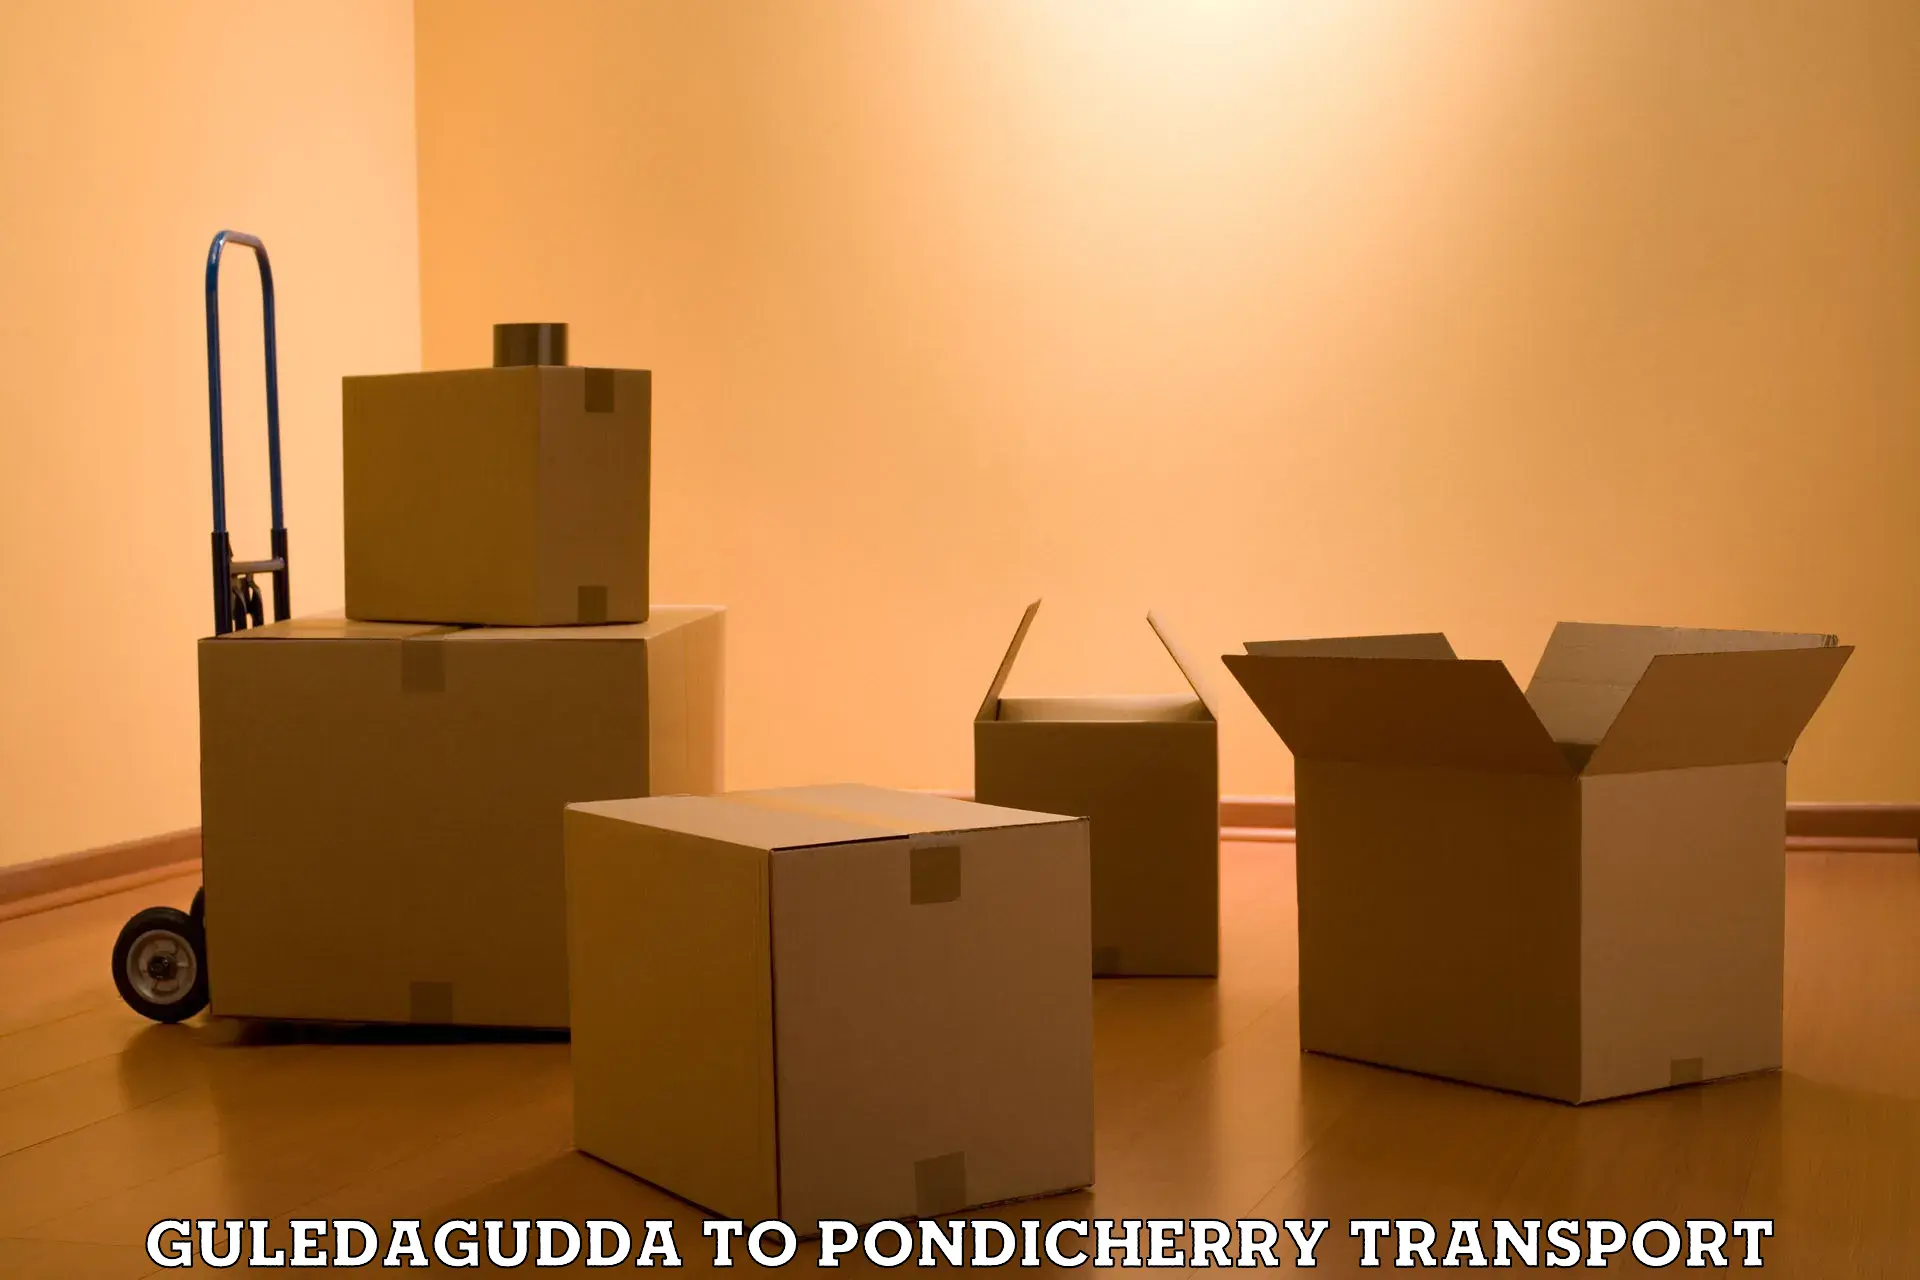 Cycle transportation service Guledagudda to Pondicherry